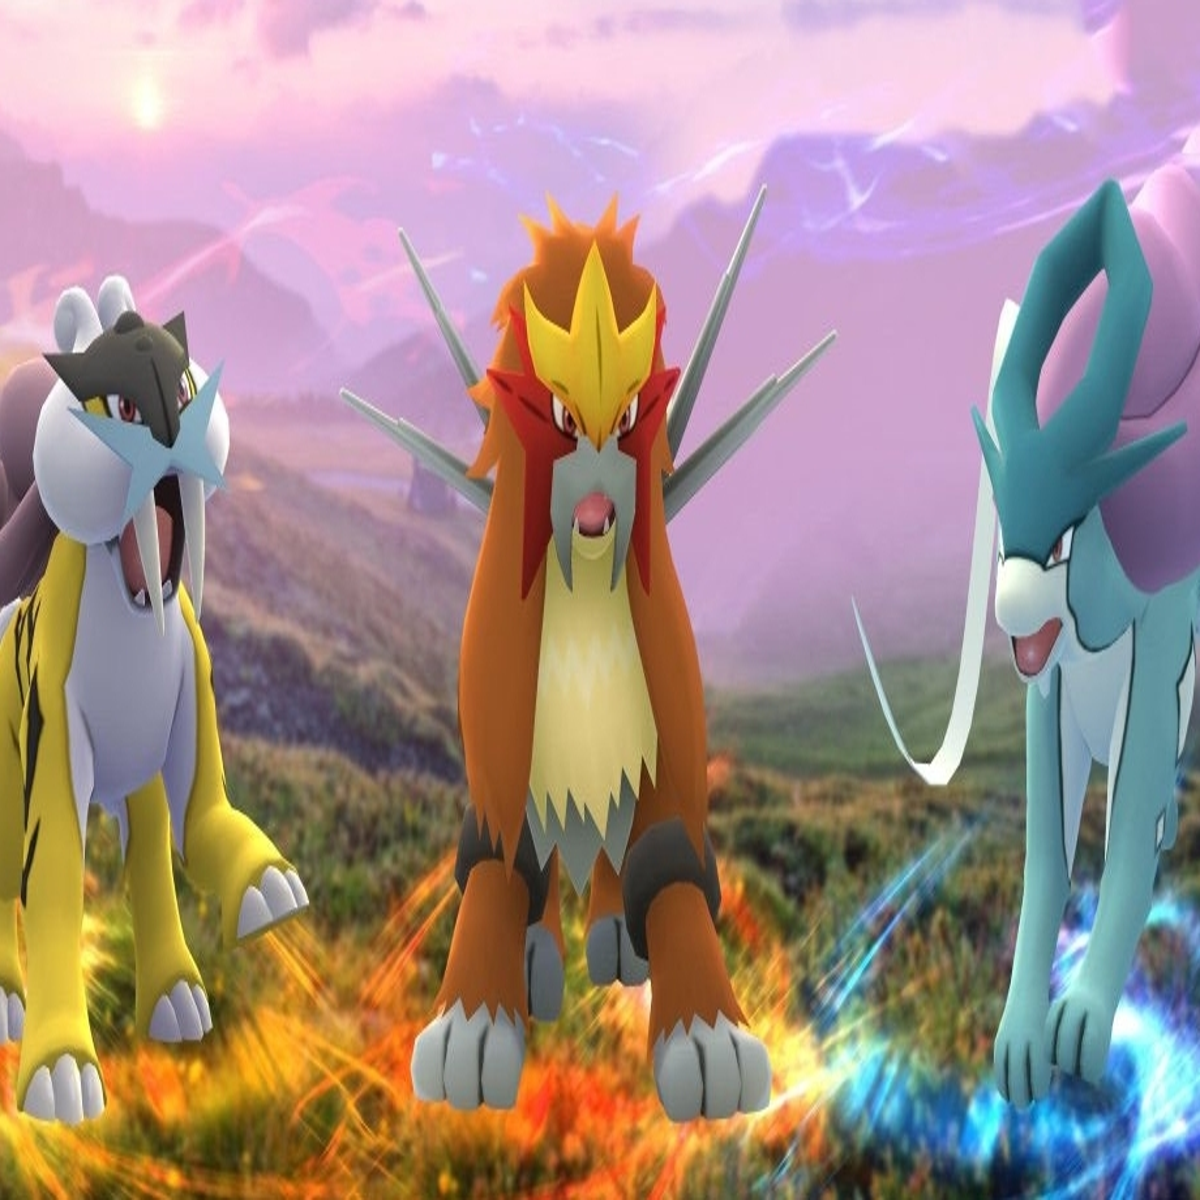 Como capturar os Pokémons lendários e raros em Red, Blue e Yellow